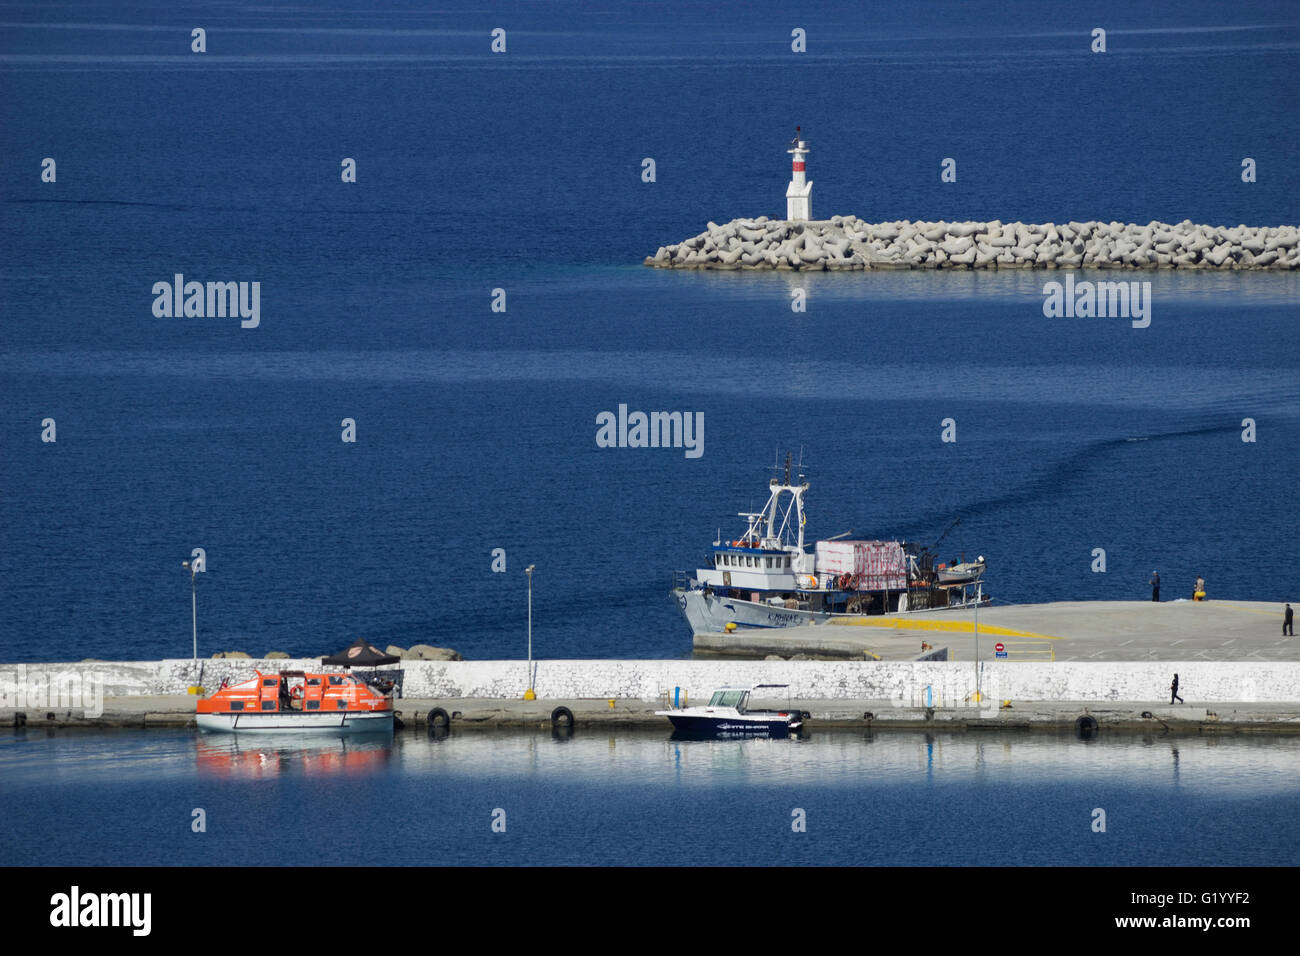 Die Myrina (Hauptstadt) Haupthafen / Hafen Promenade.  Limnos oder Lemnos Insel, Griechenland Stockfoto